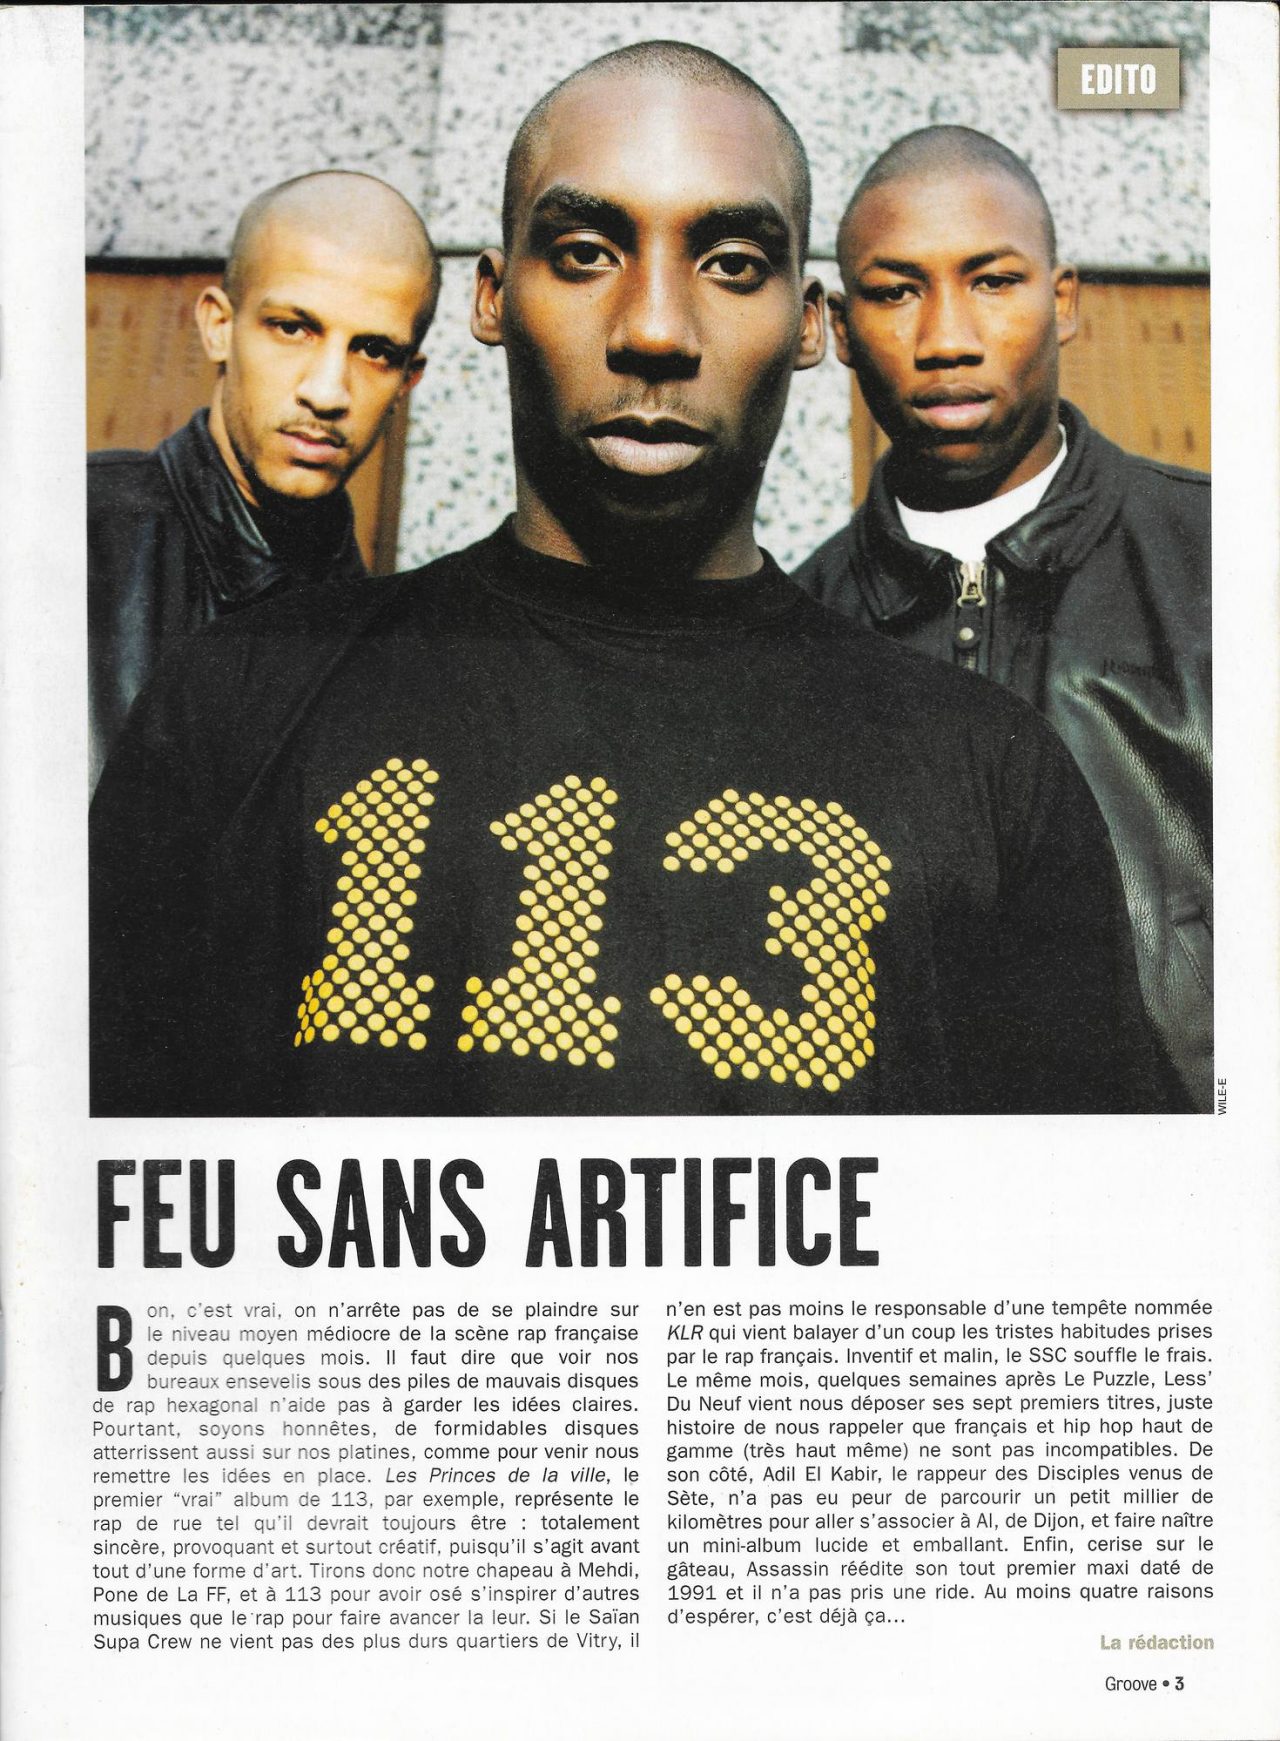 113 - Les Princes de la ville - 27/10 - 1999, une année de rap français